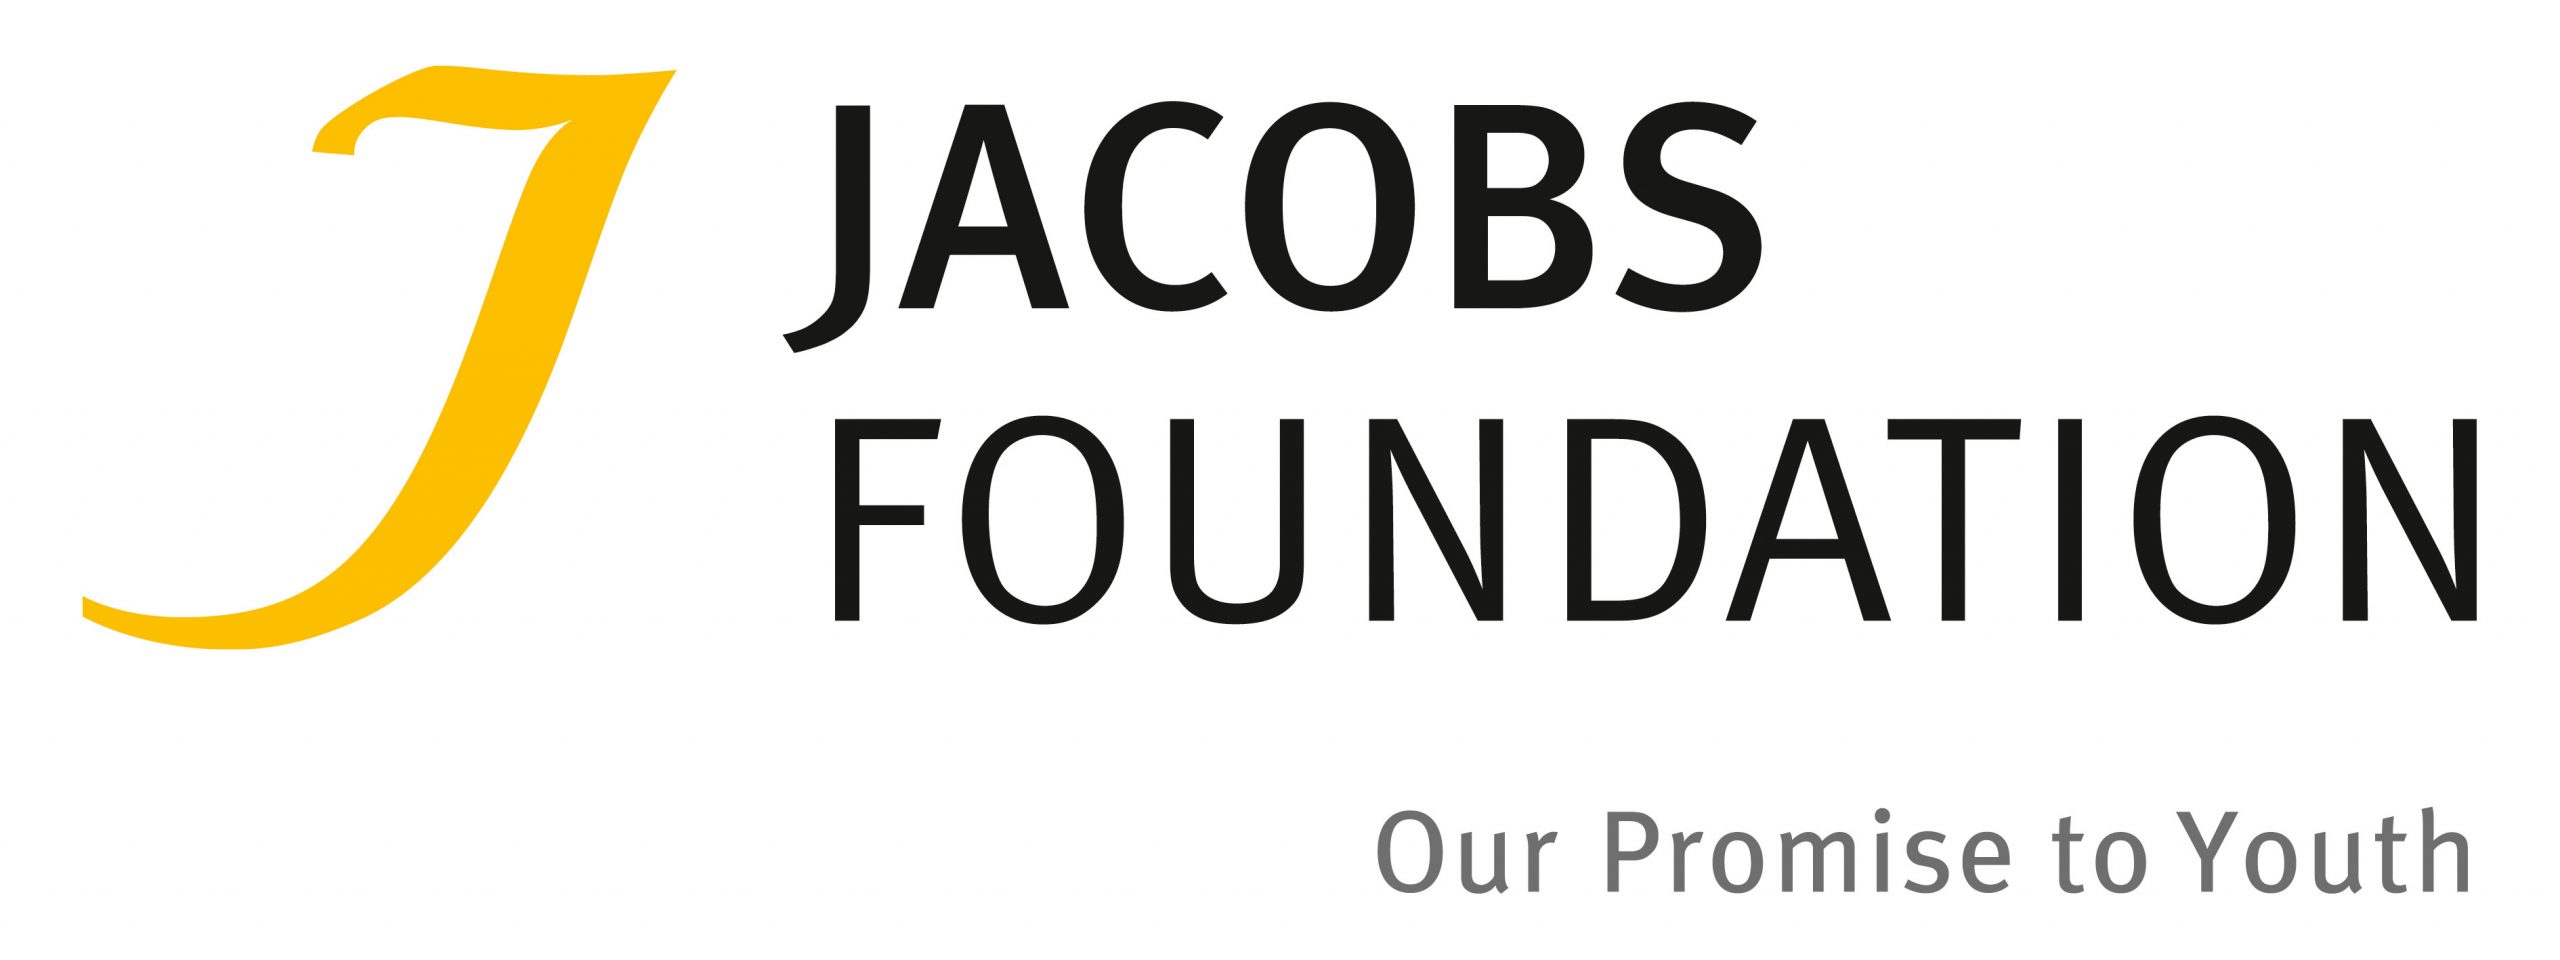 Das Bild zeigt das Logo der Jacobs Foundation und verlinkt  auf deren Website 